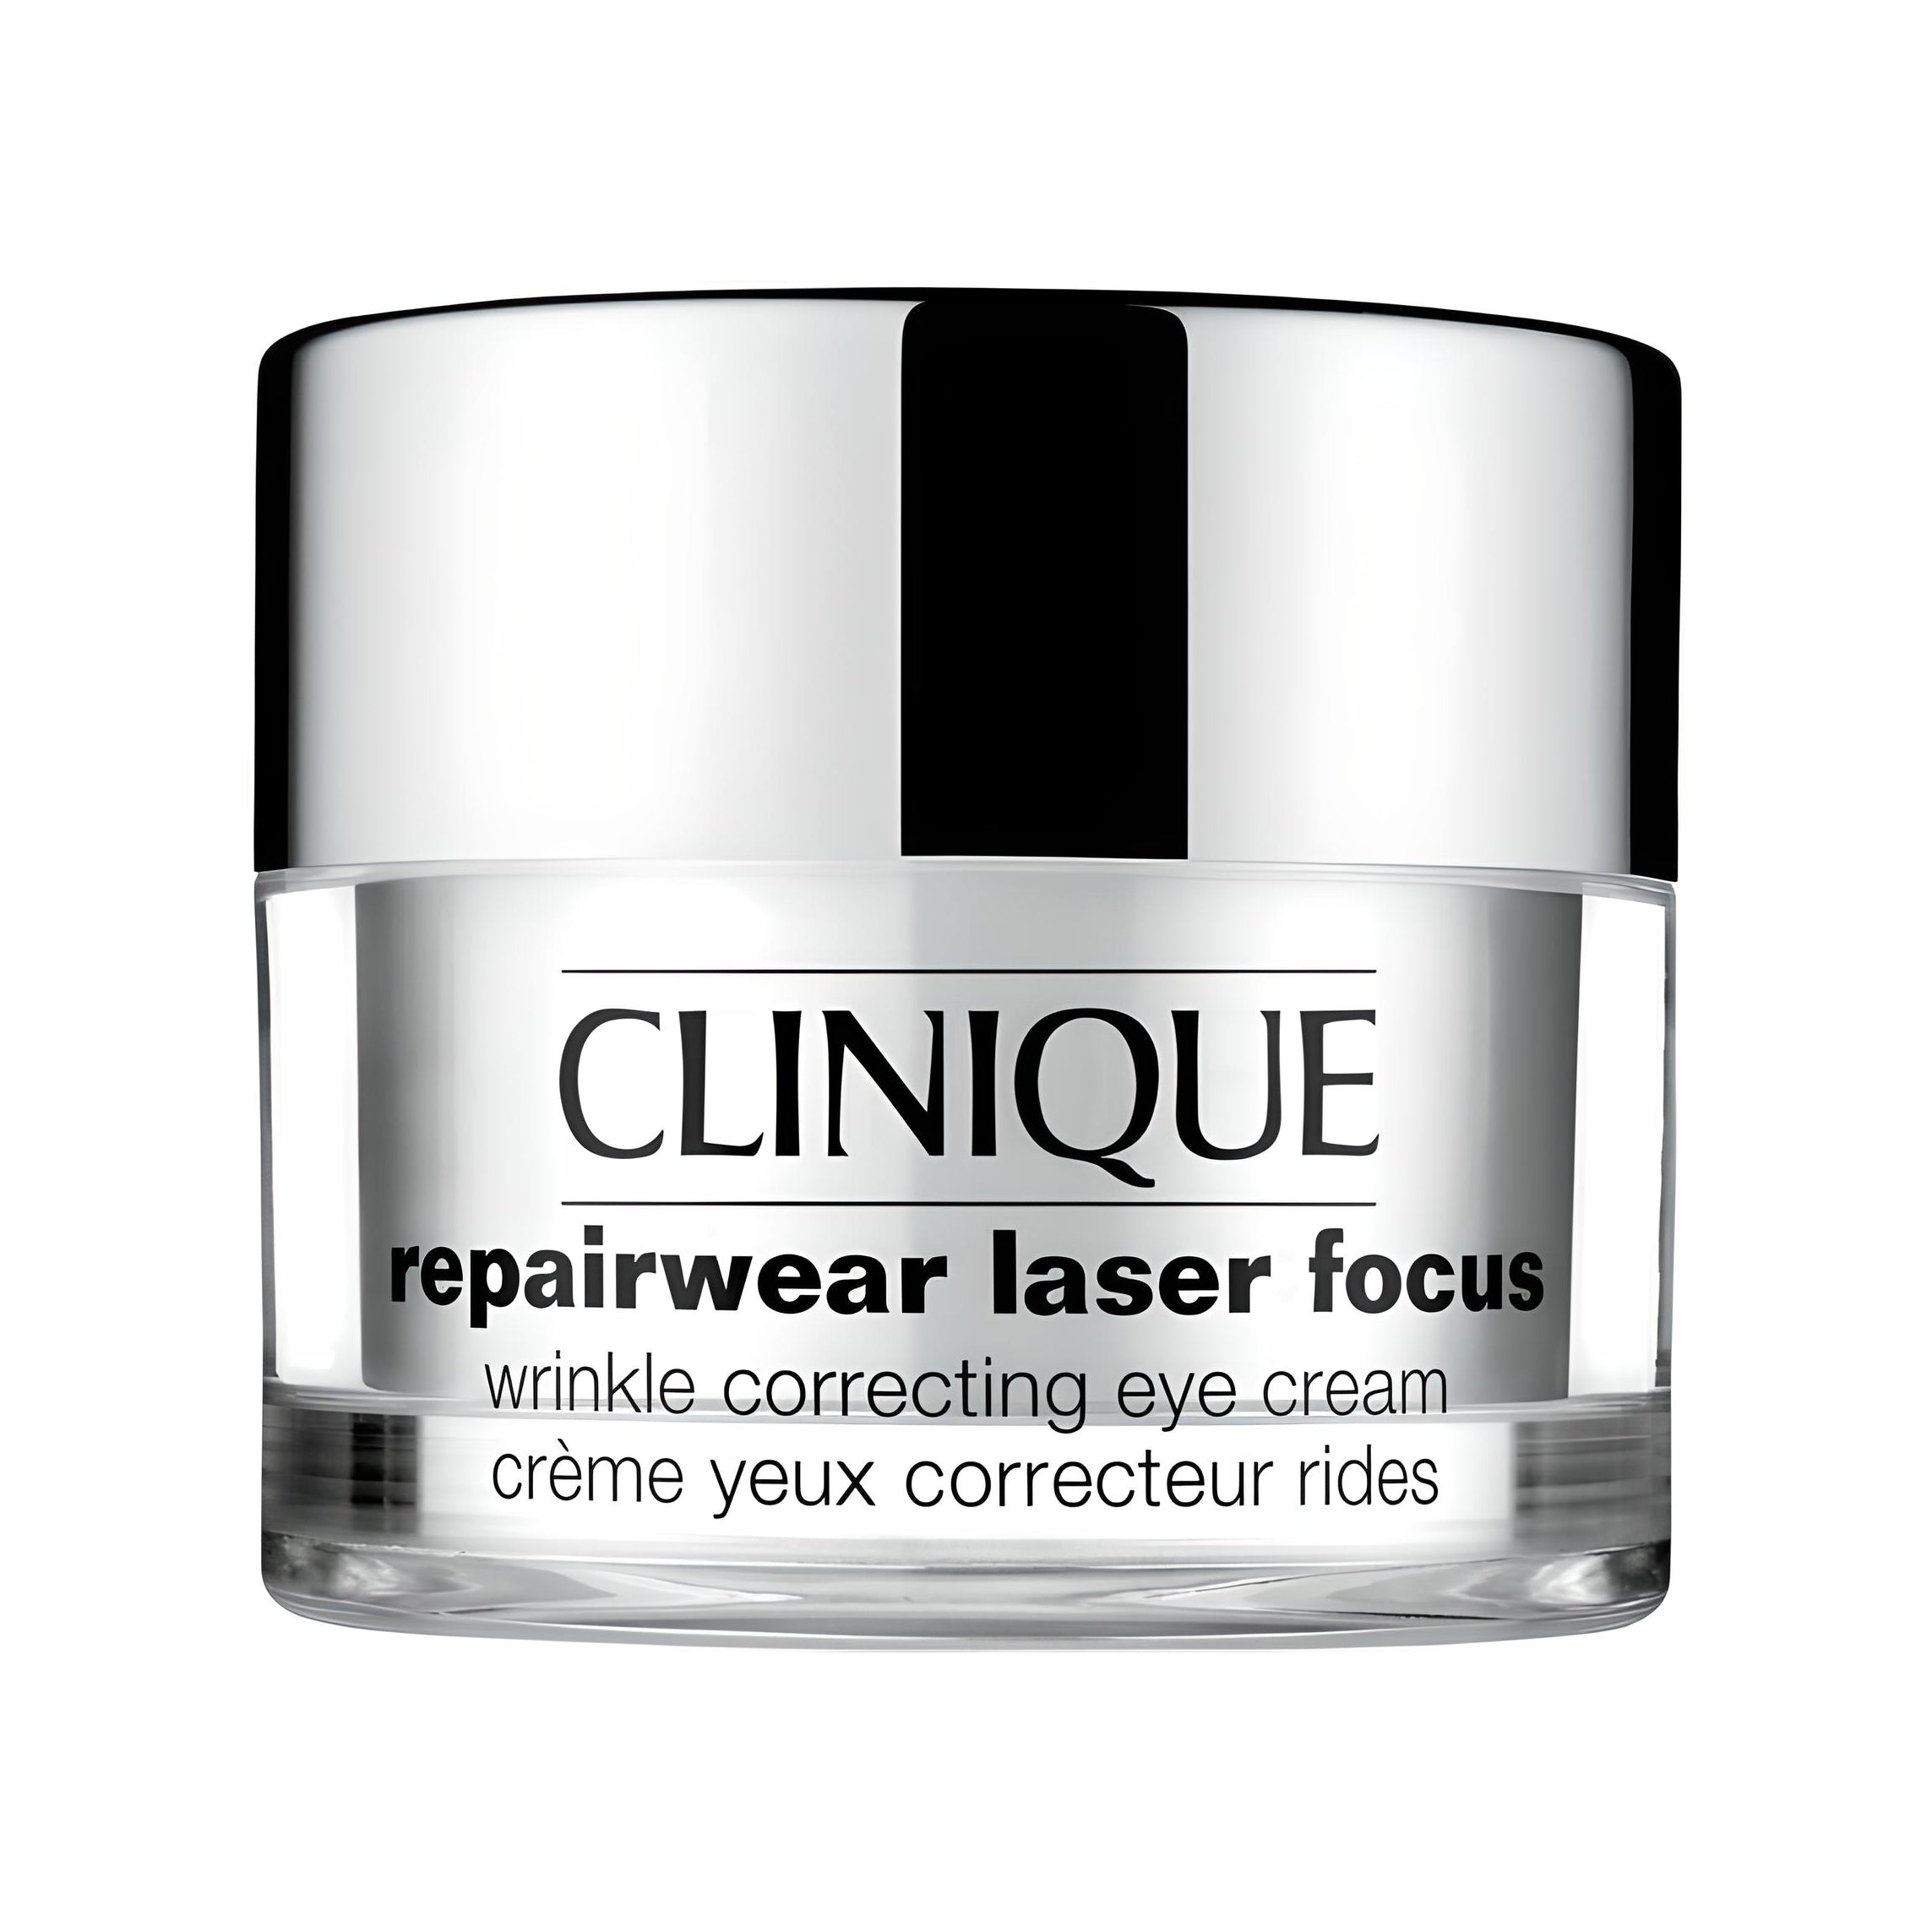 REPAIRWEAR LASER FOCUS wrinkle correcting eye cream